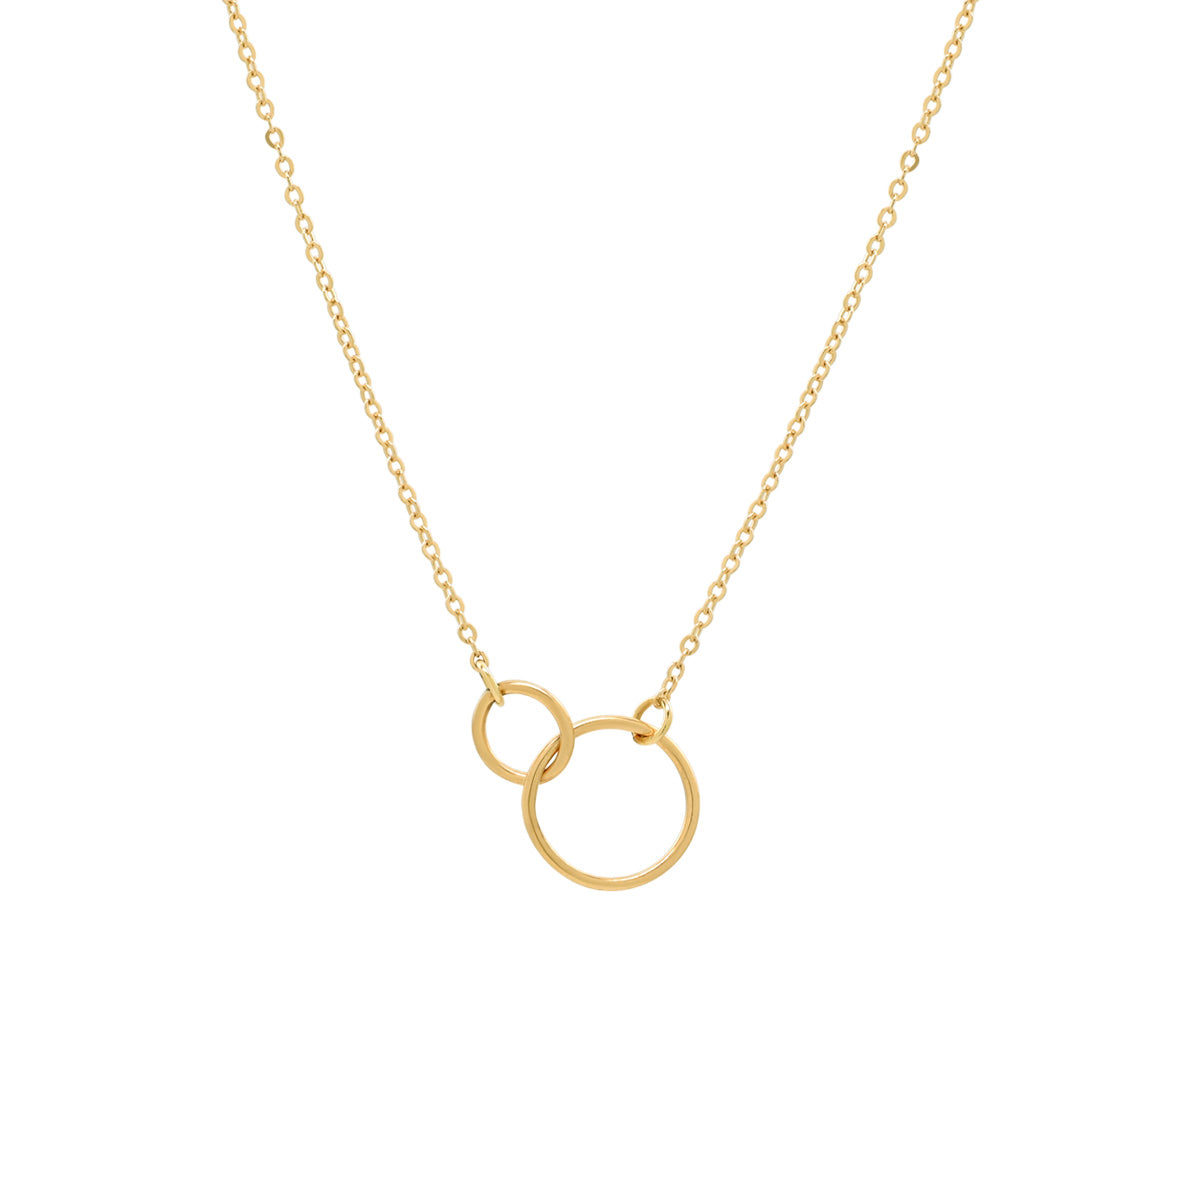 Buy the Gold Large Crescent Moon Necklace from British Jewellery Designer  Daniella Draper – Daniella Draper UK